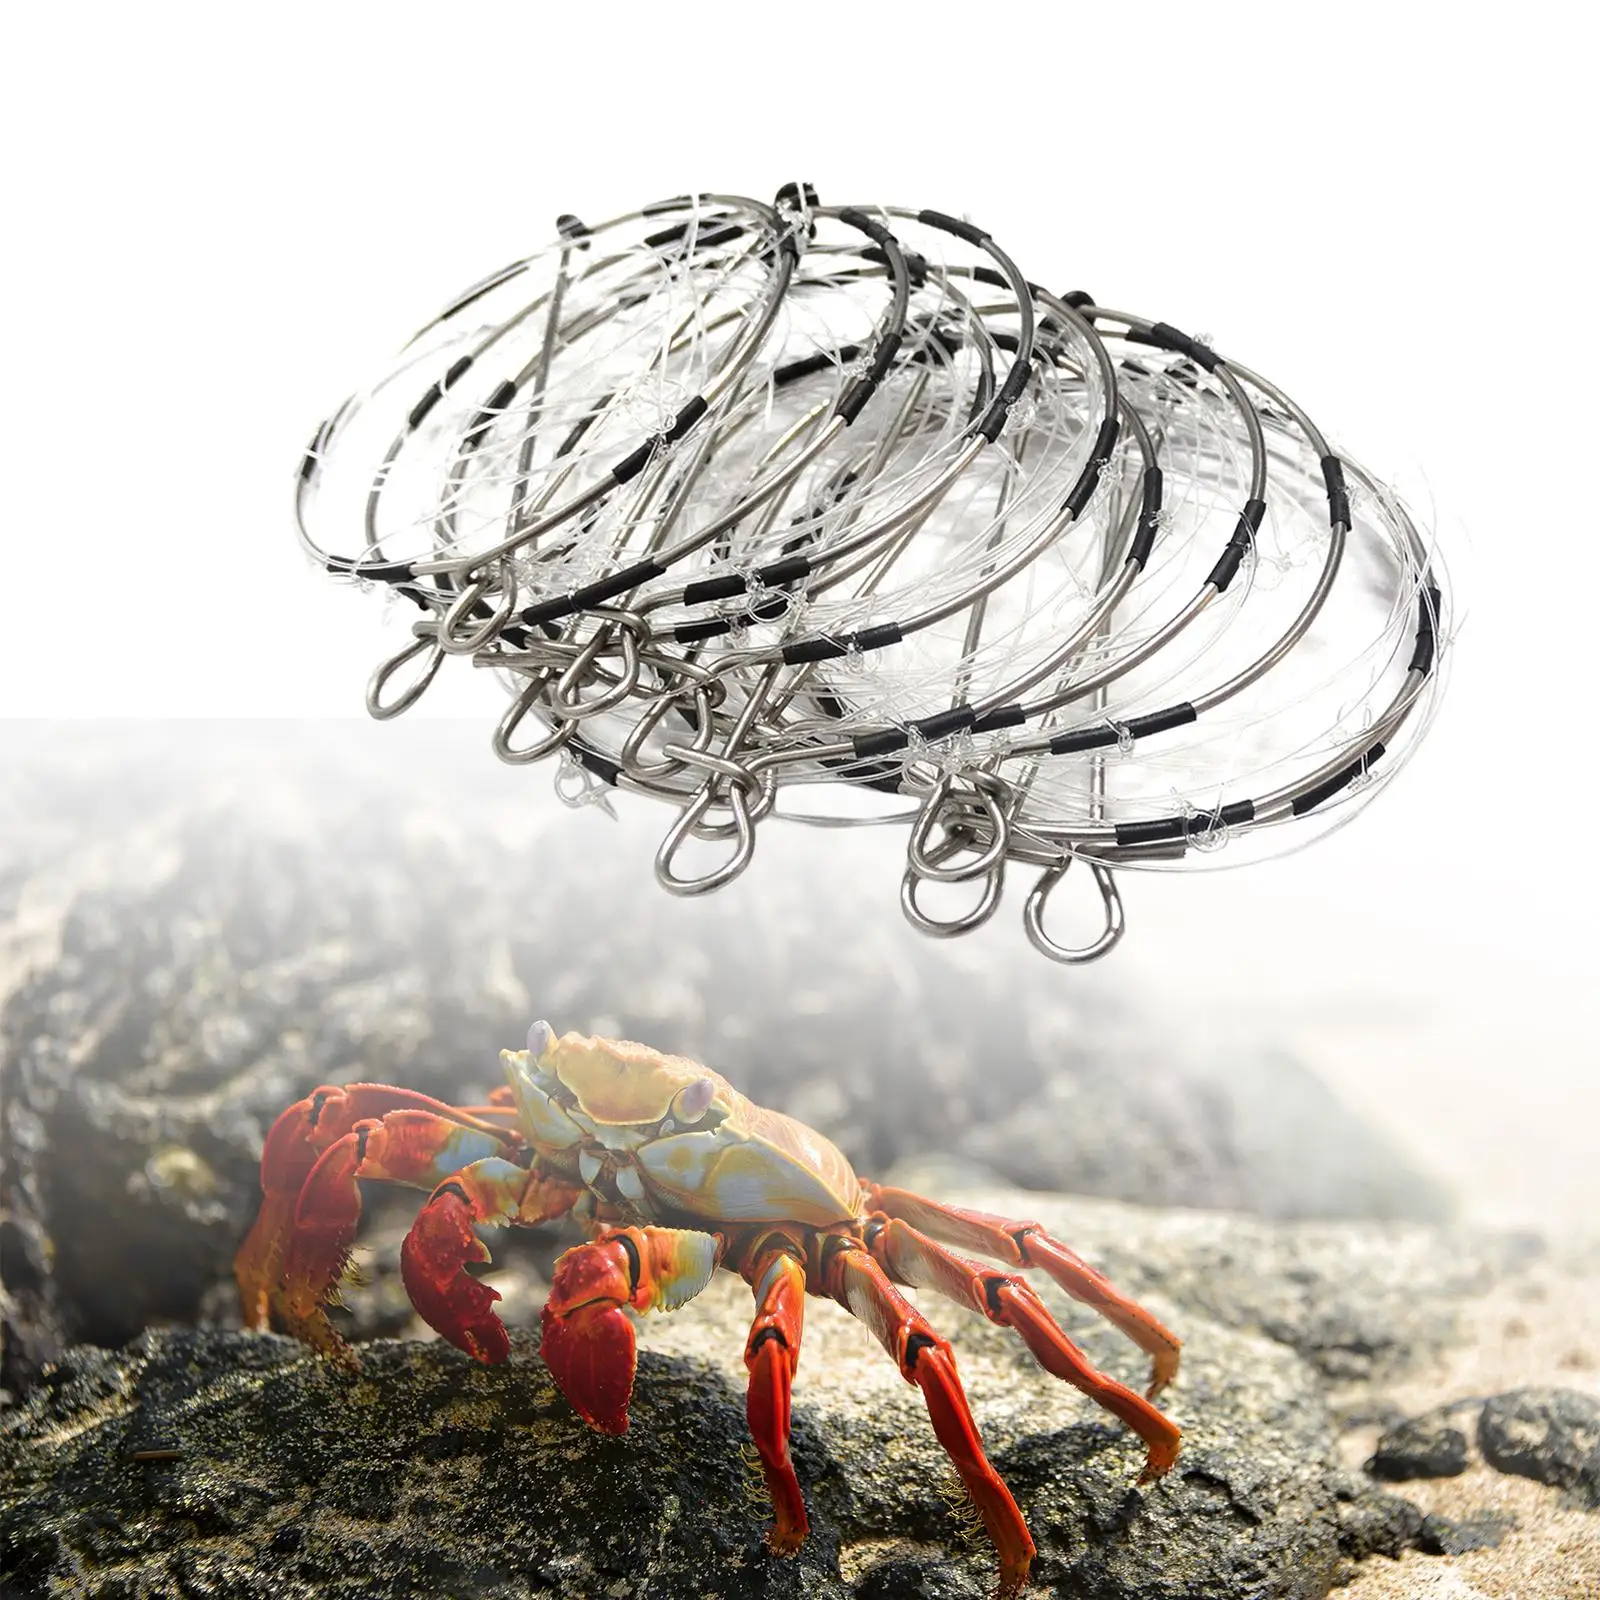 10 Pieces Crab Trap 6-ring Cast Dip Cage Steel for Crawdad Lobster Crayfish